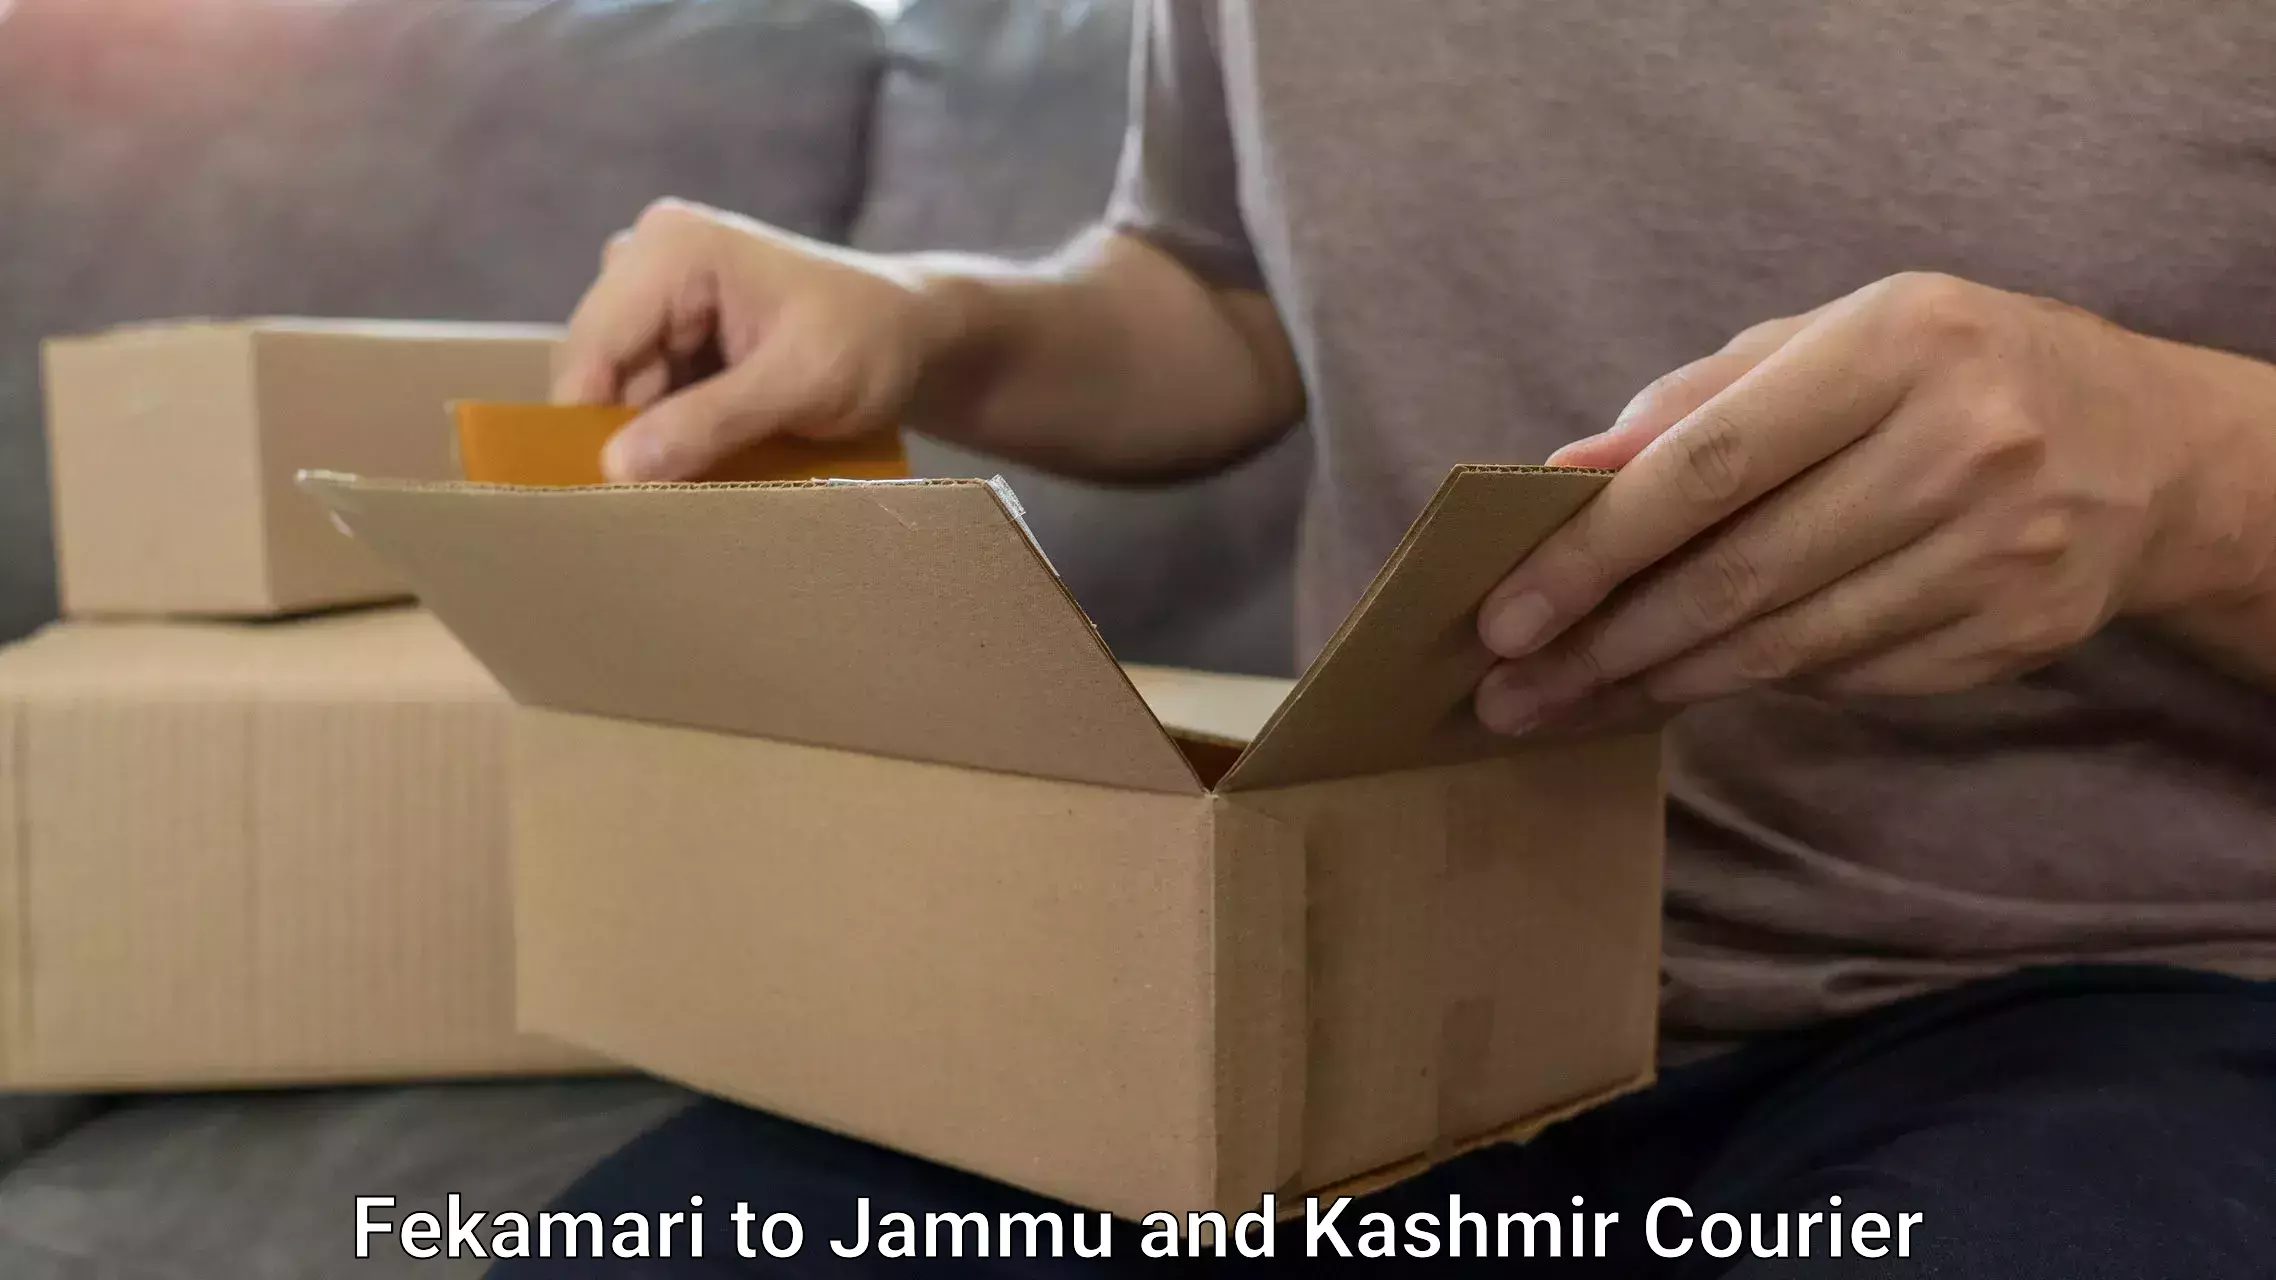 Luggage transport deals Fekamari to Jammu